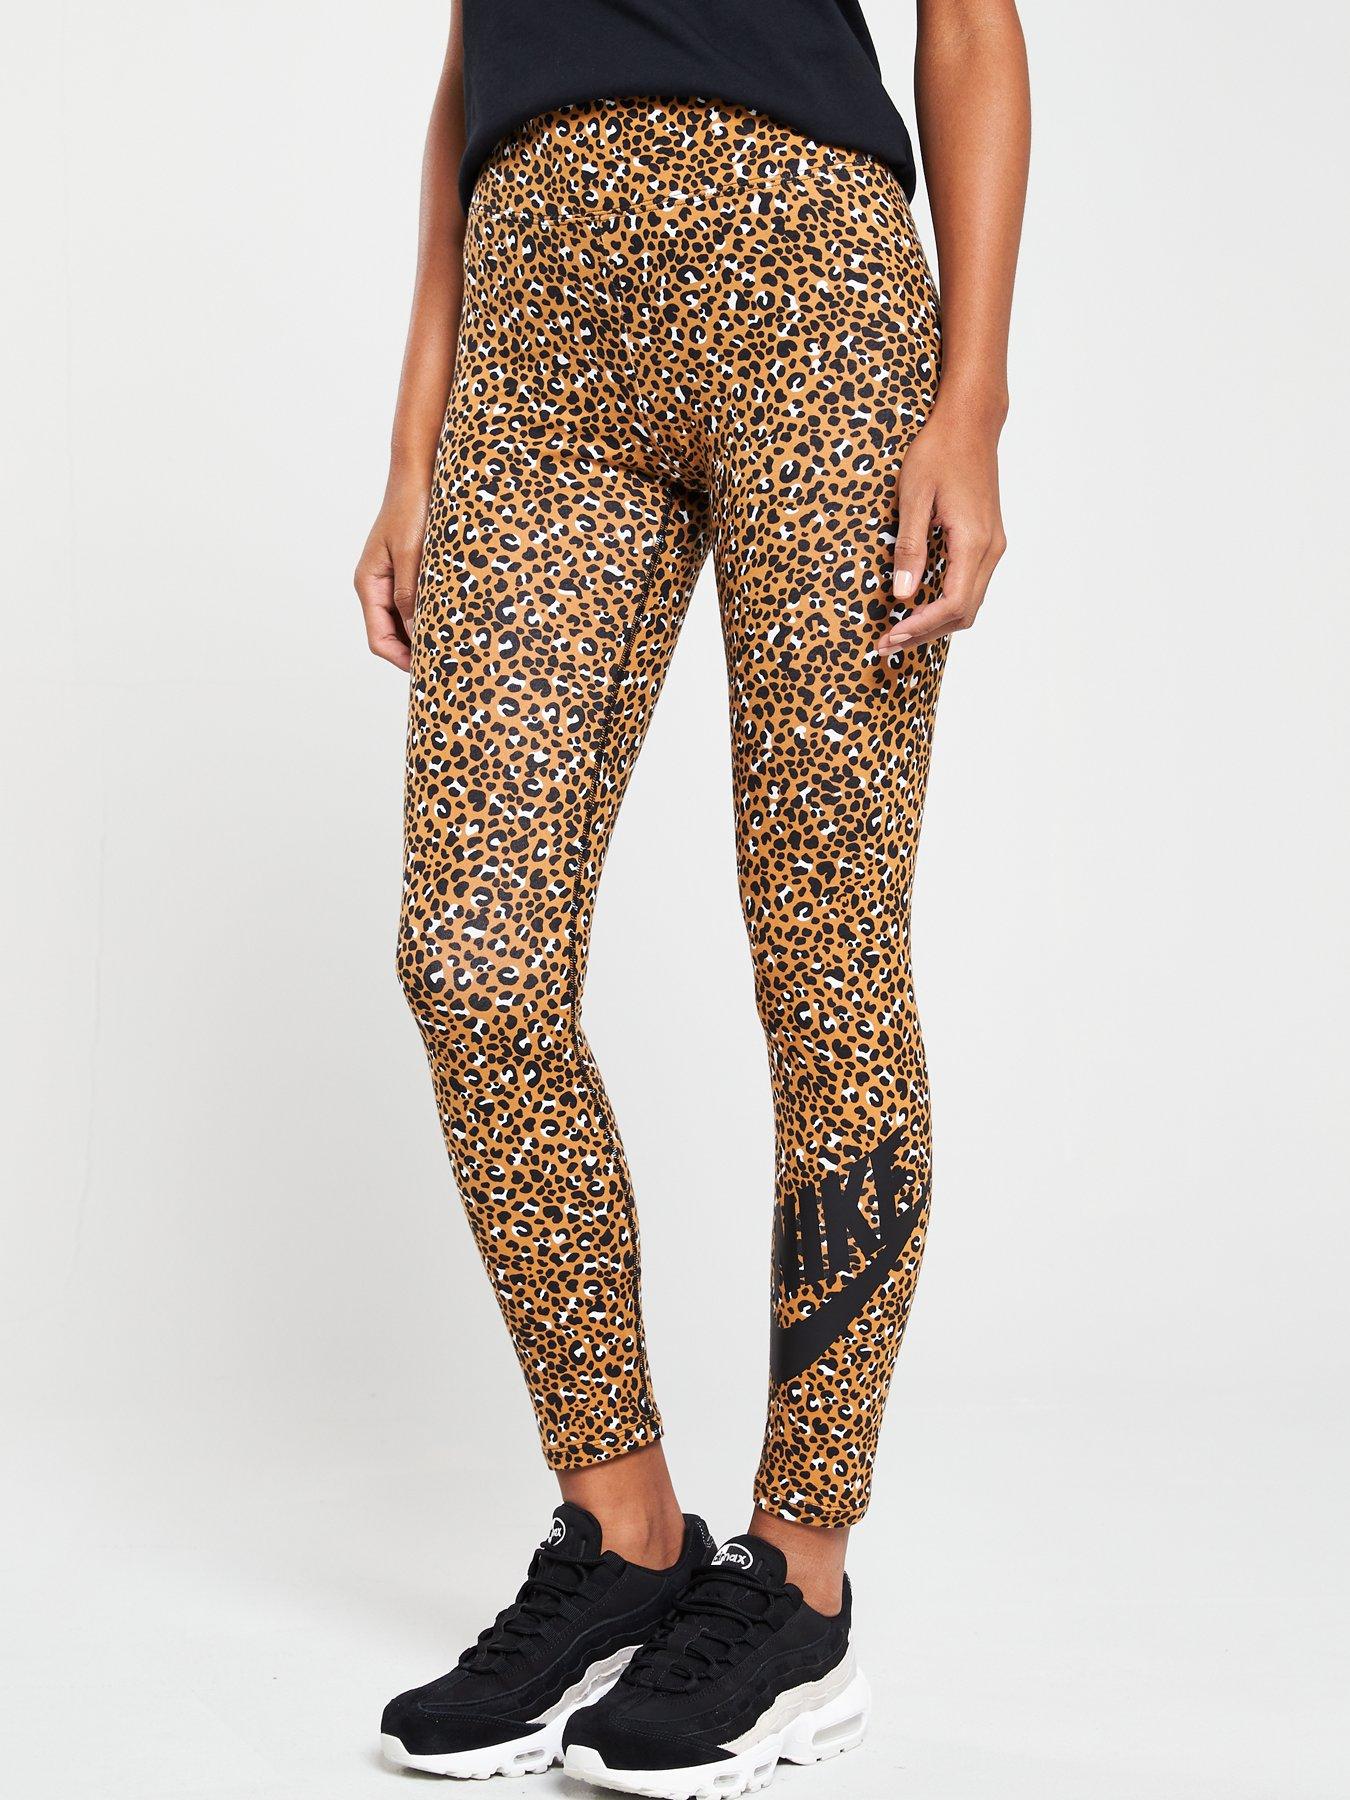 nike leopard pants